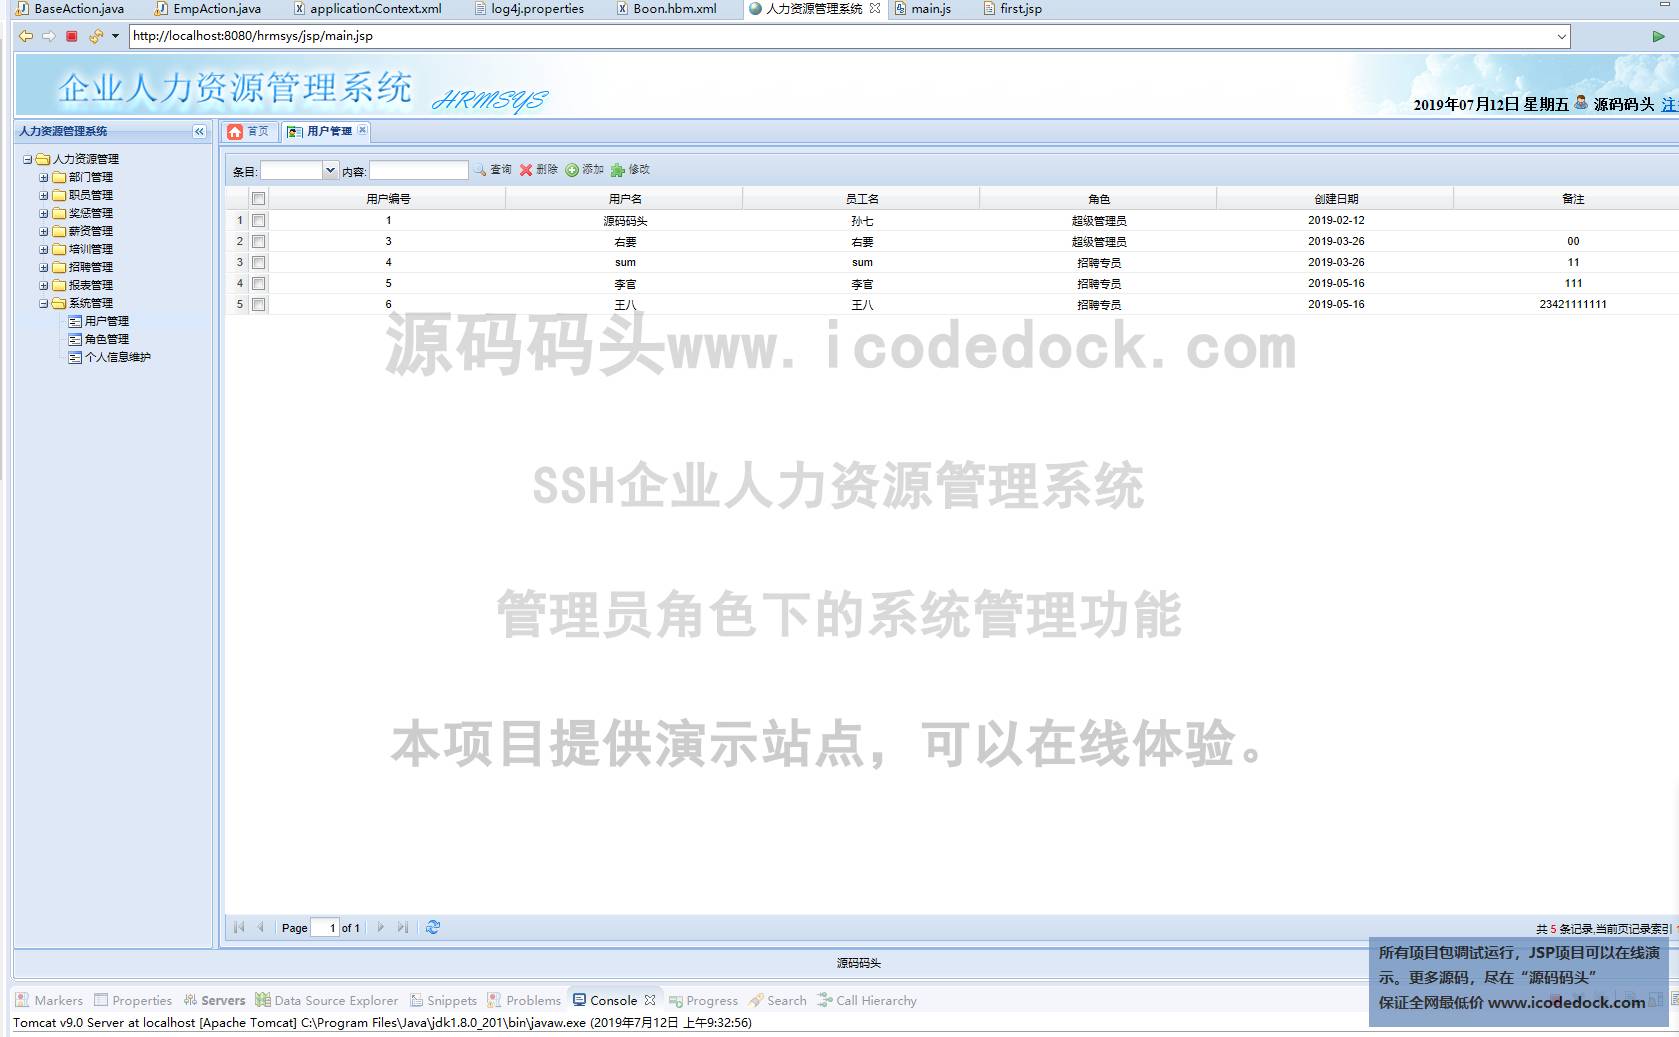 源码码头-SSH企业人力资源管理系统-管理员角色-系统管理